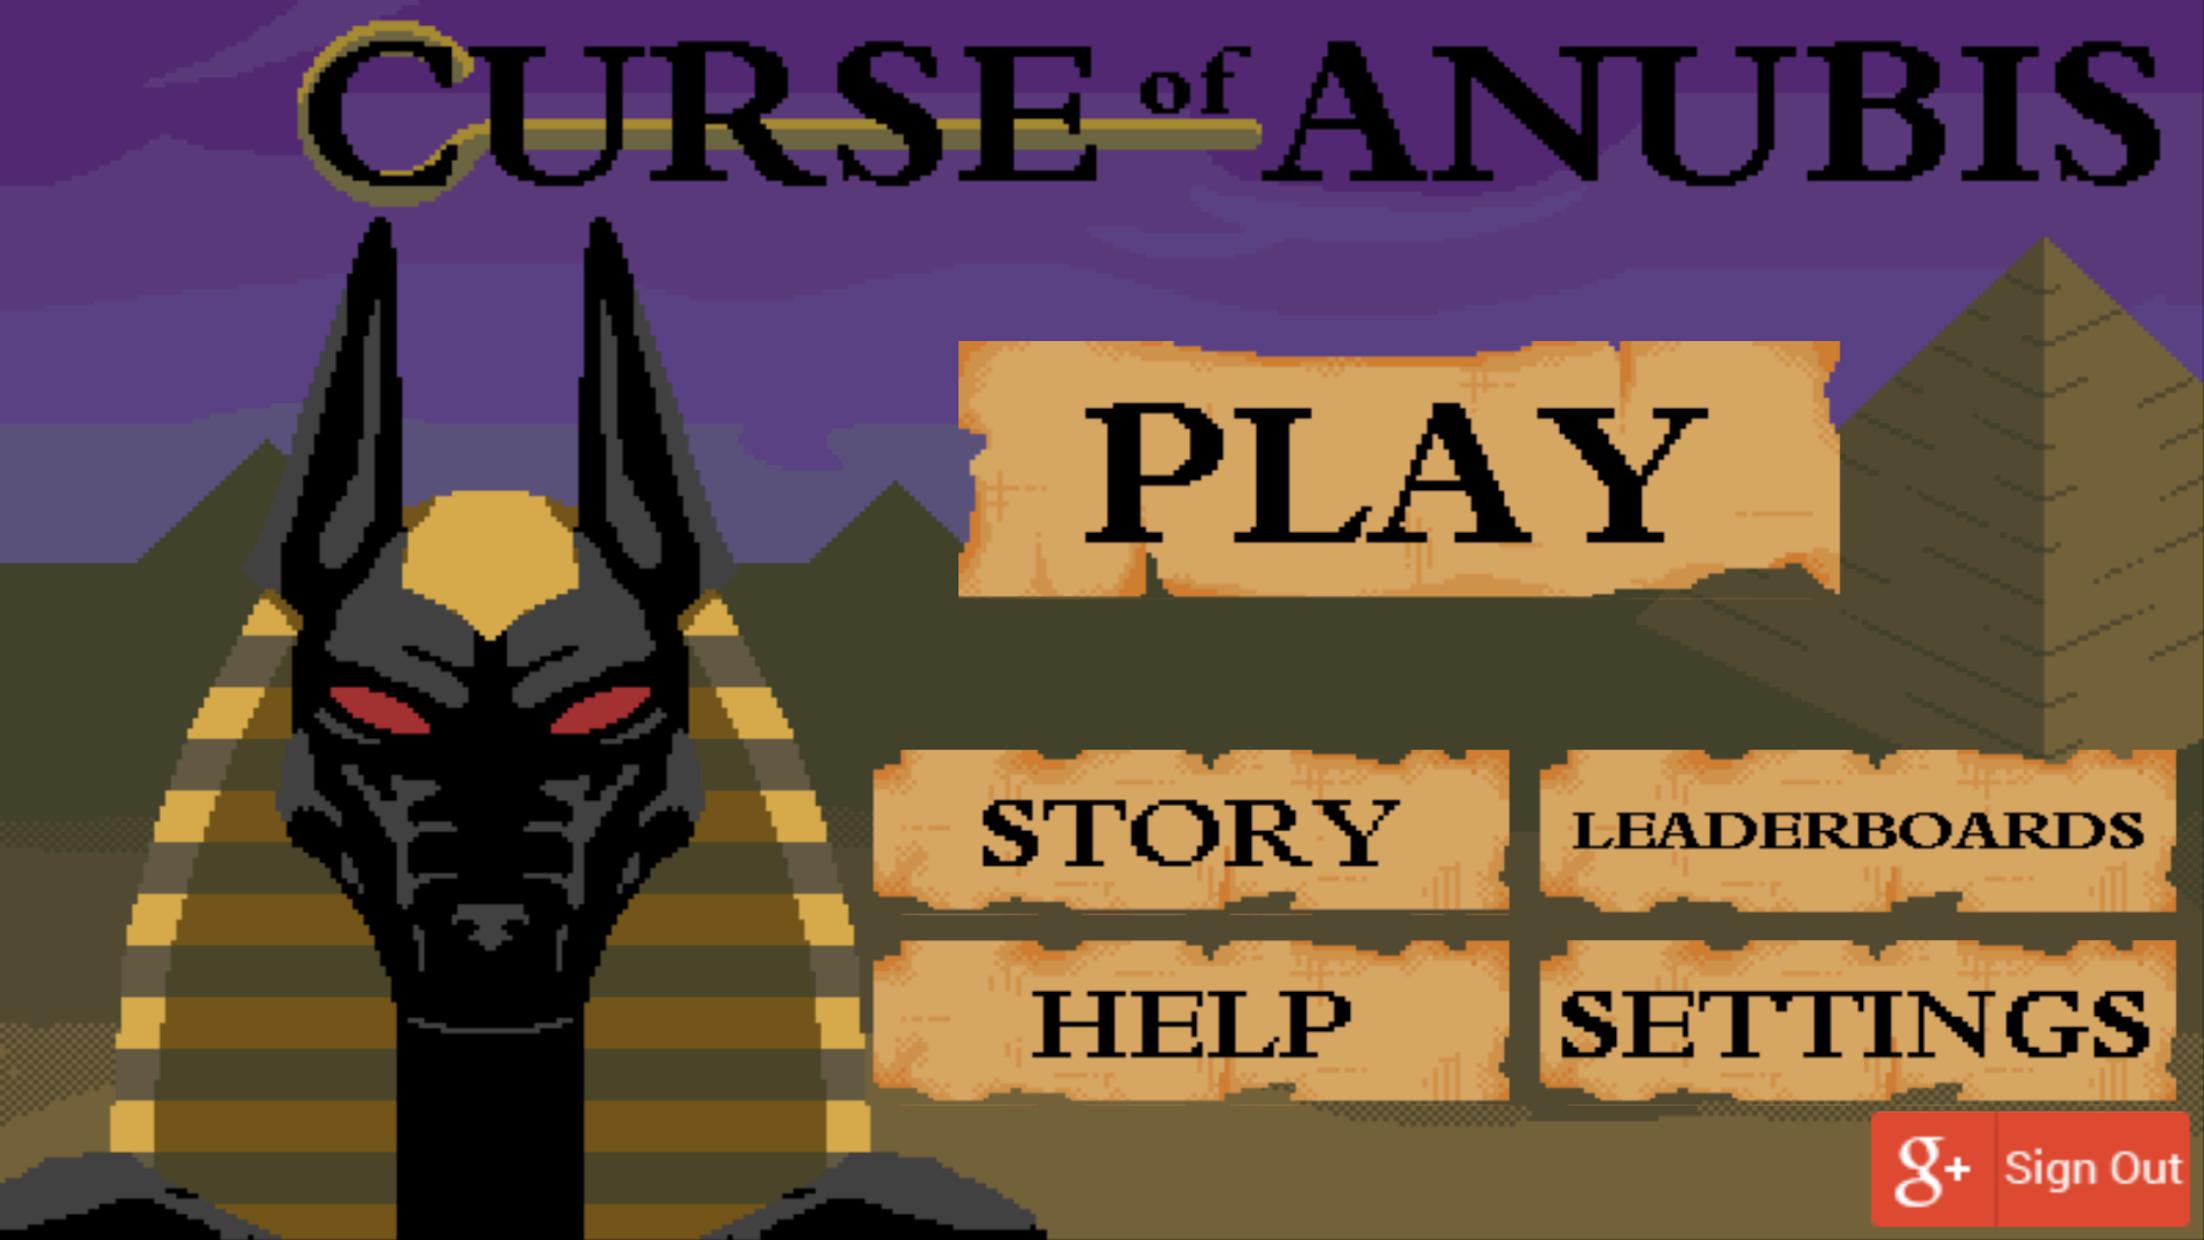 Curse of Anubis